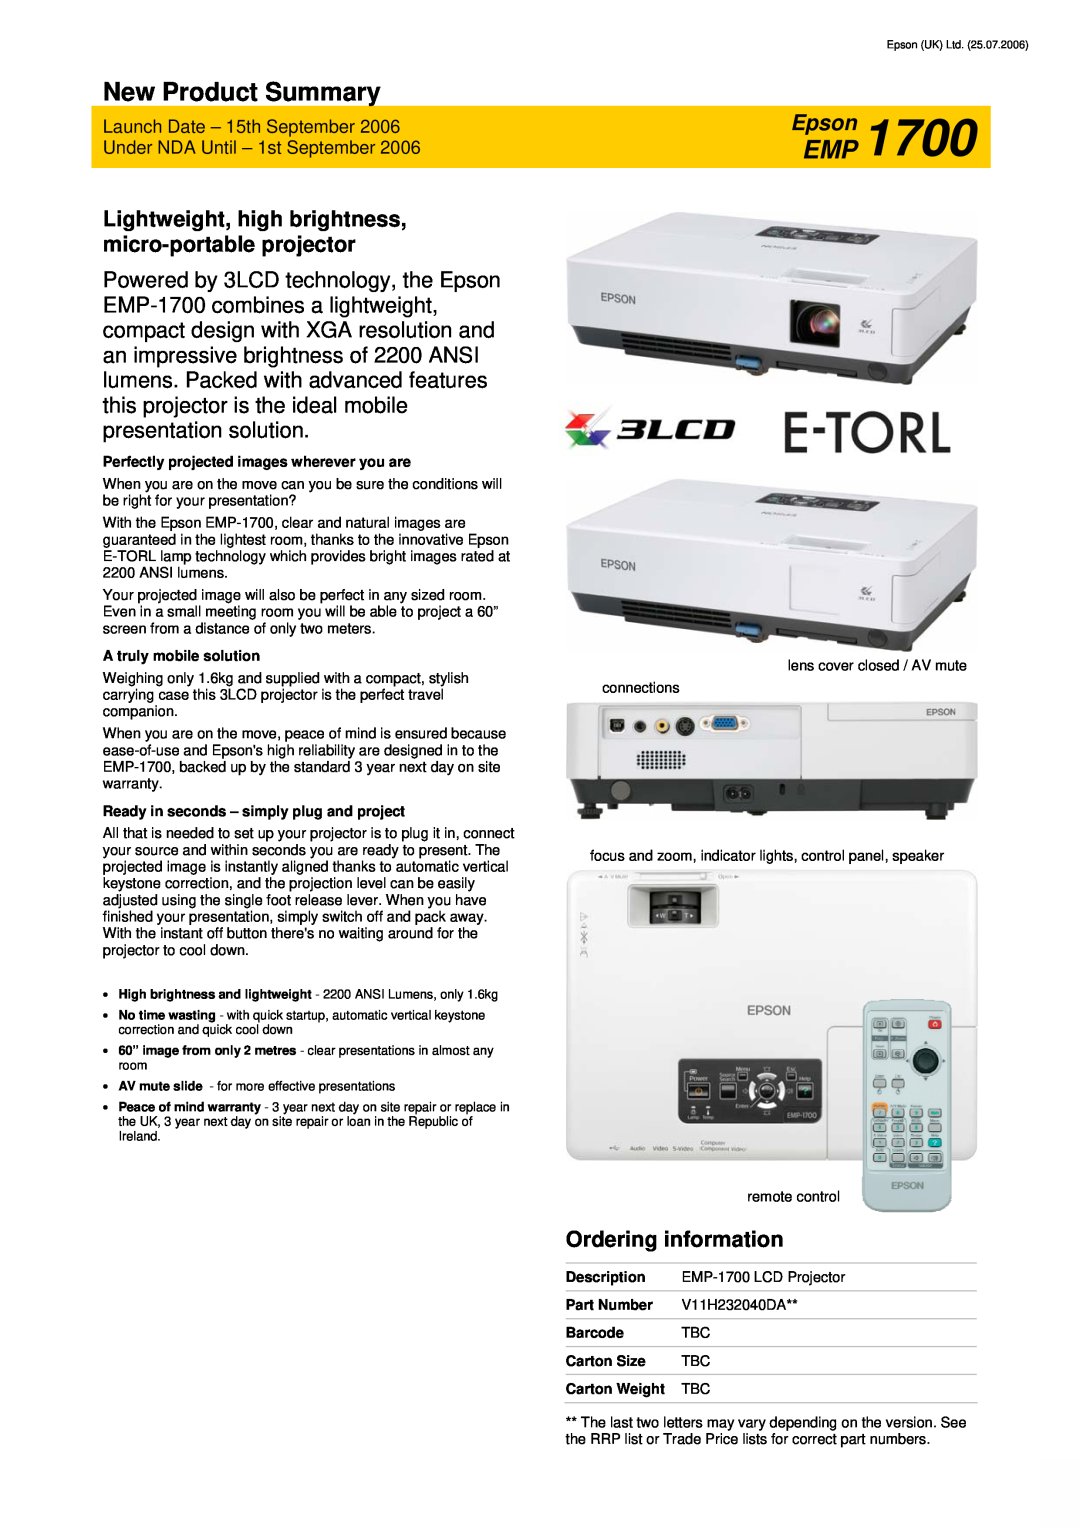 Epson EMP-1700 warranty Ordering information, New Product Summary, EpsonEMP 